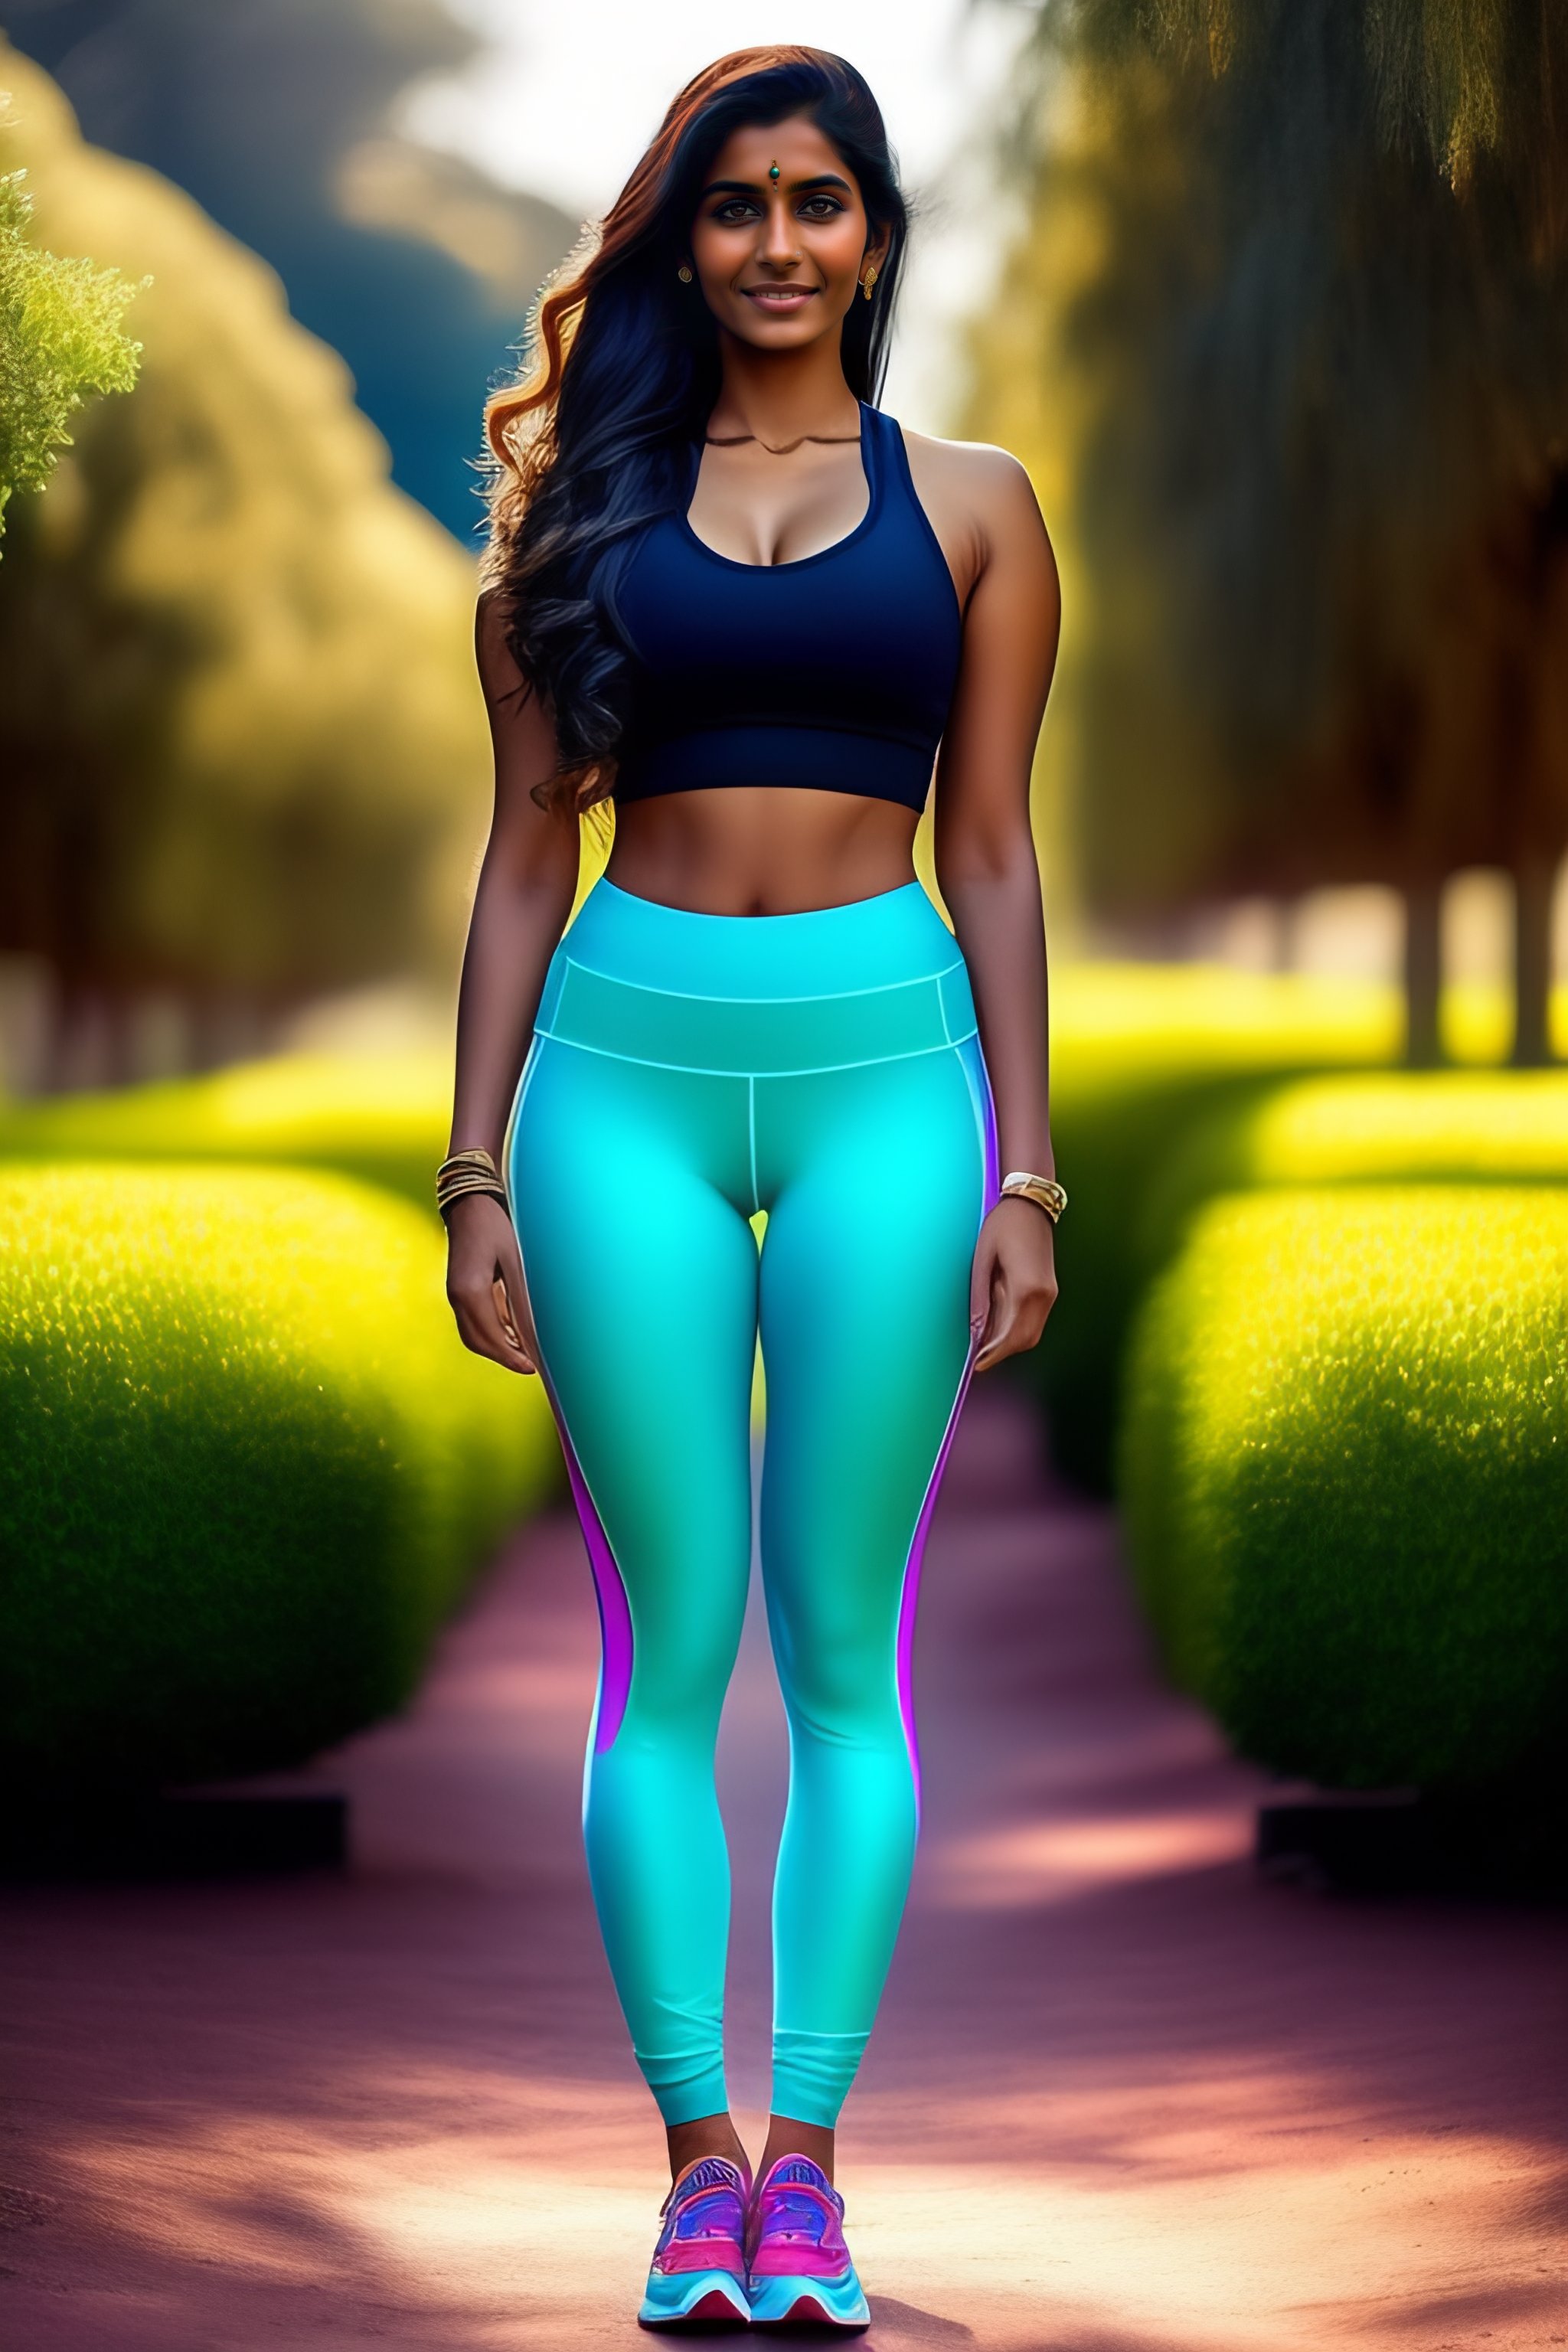 Lexica - A beautiful Indian cute girl wearing yoga pants hot